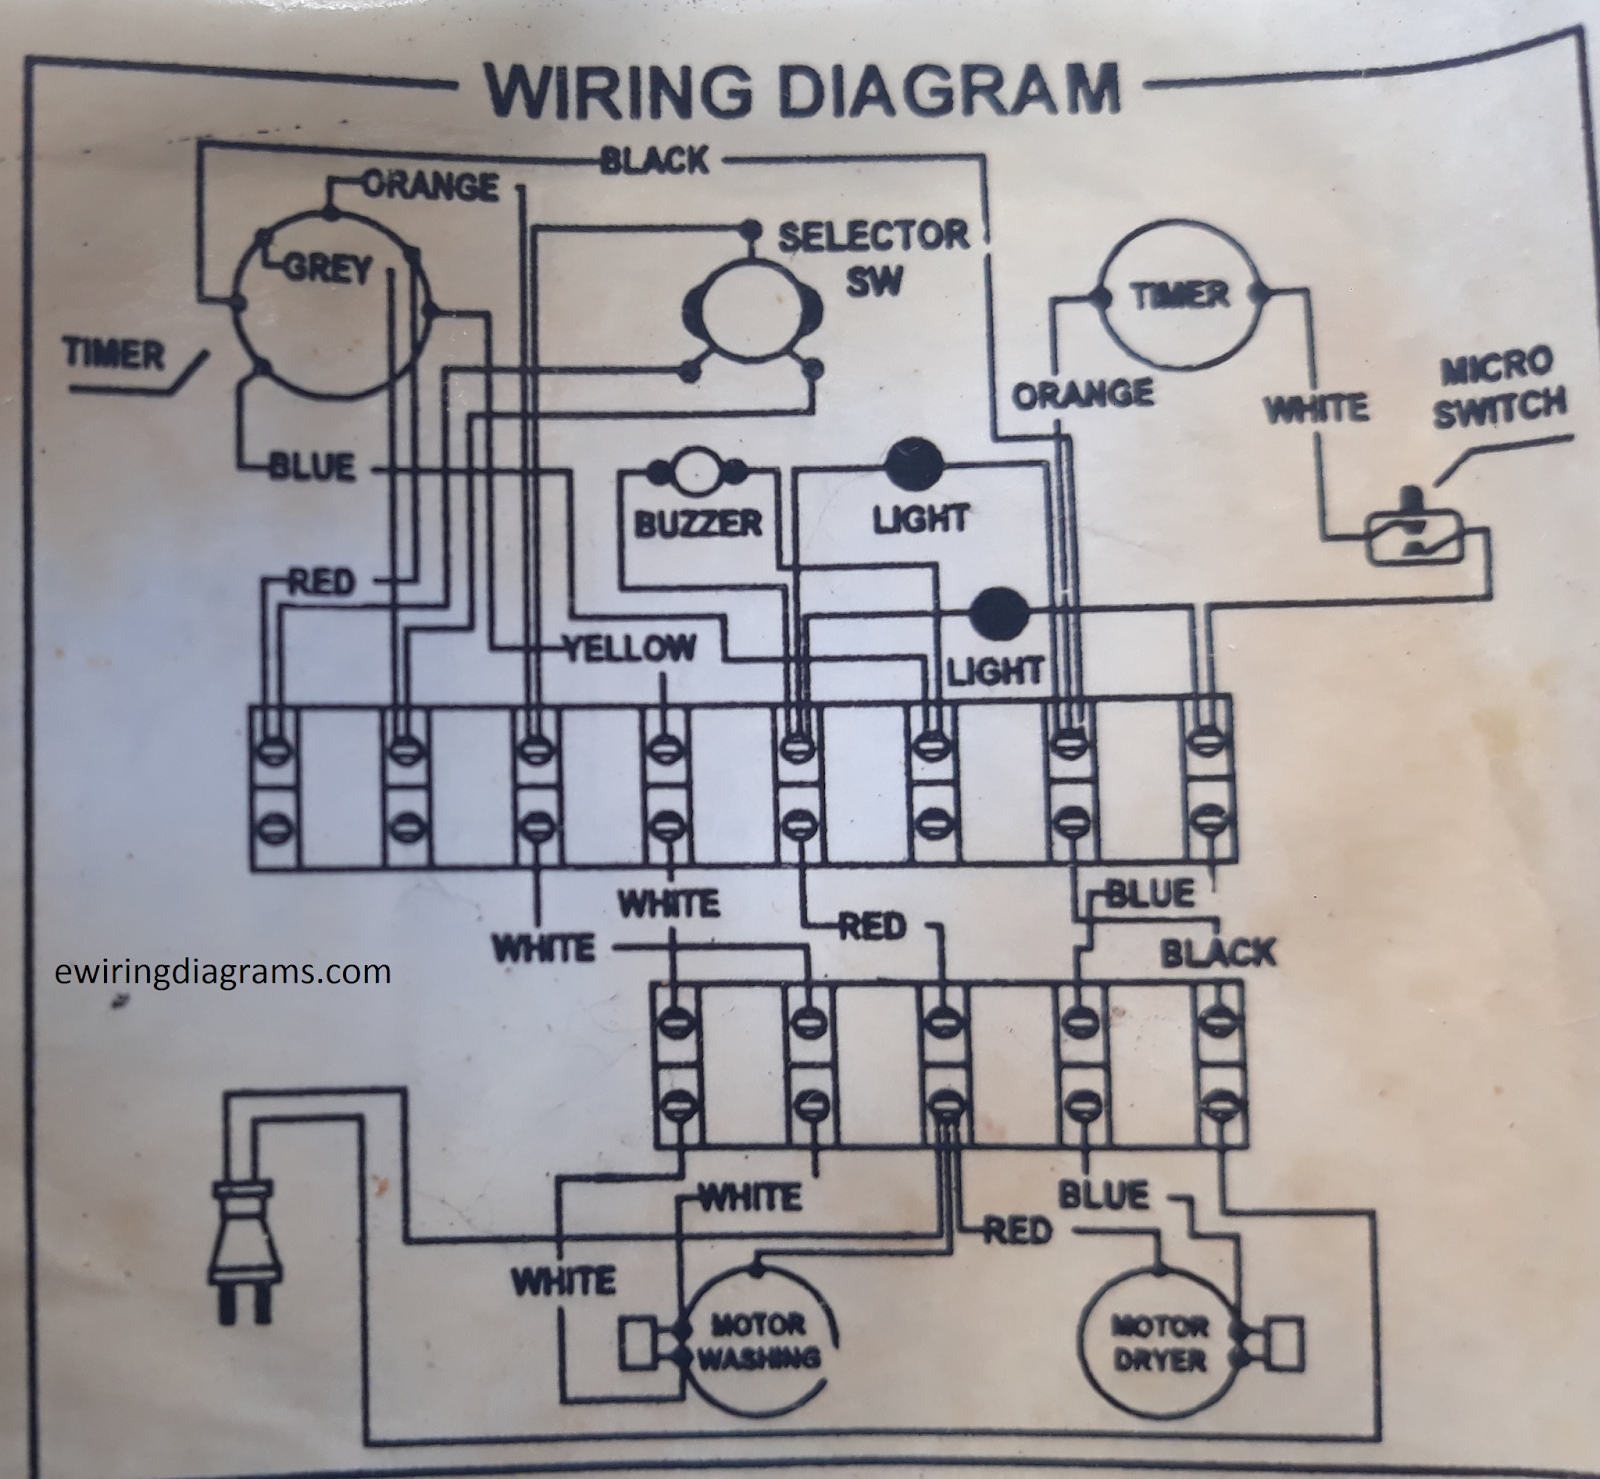 Wiring Diagram For Washing Machine